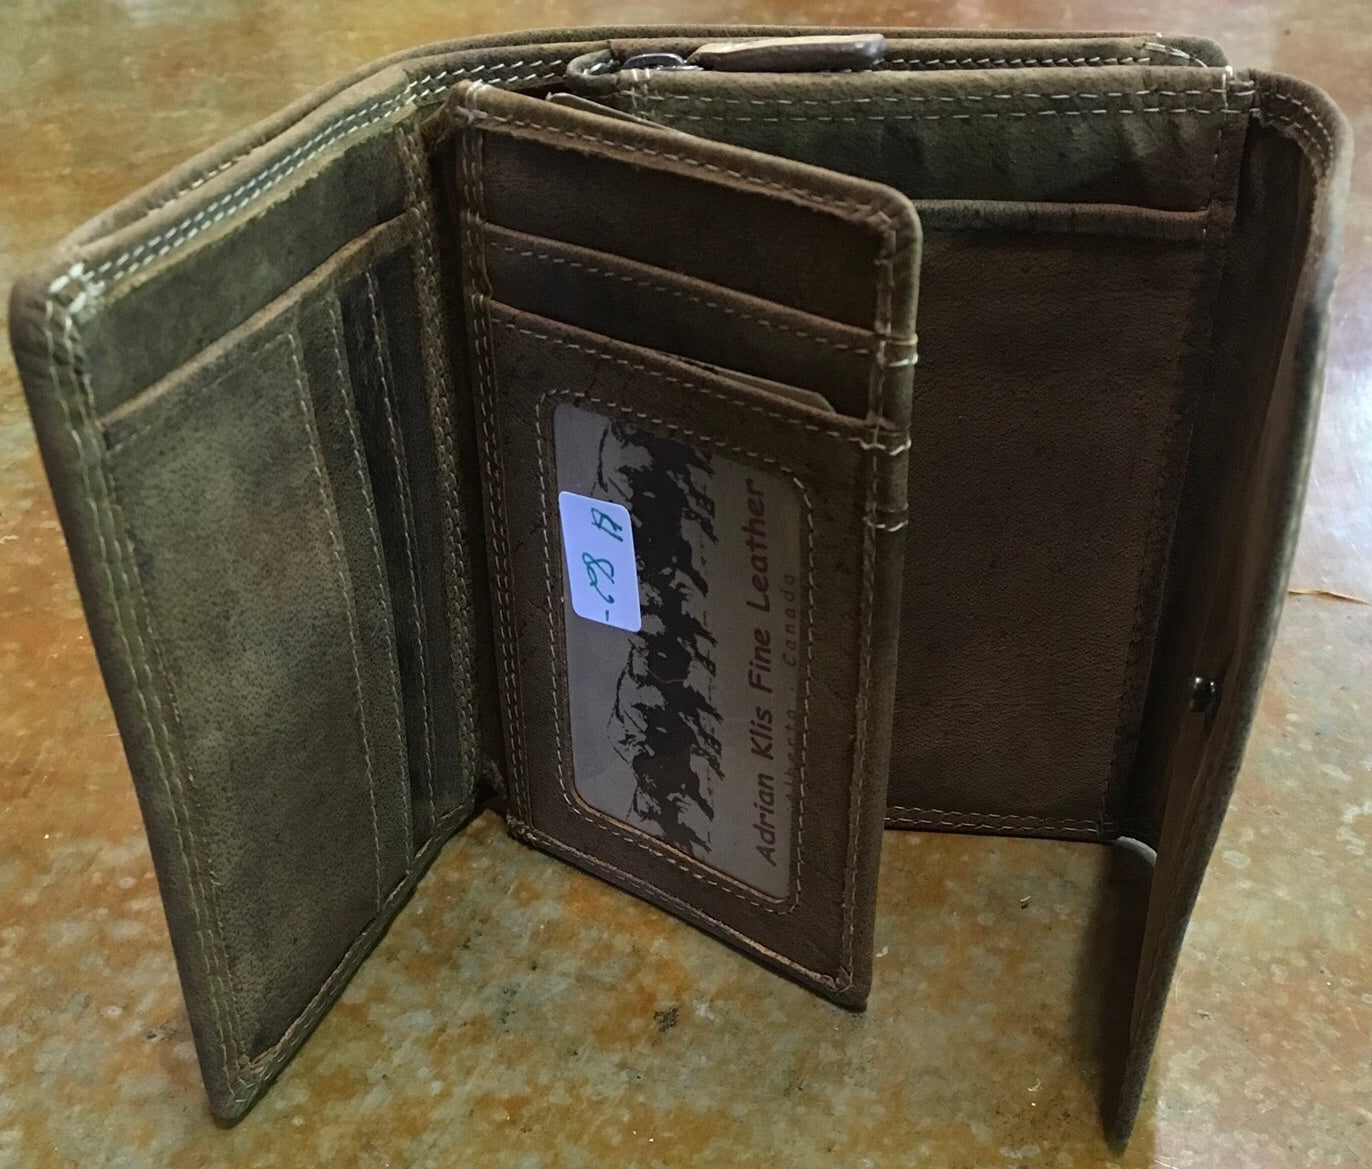 #206 - Adrian Klis zip top 4 fold wallet